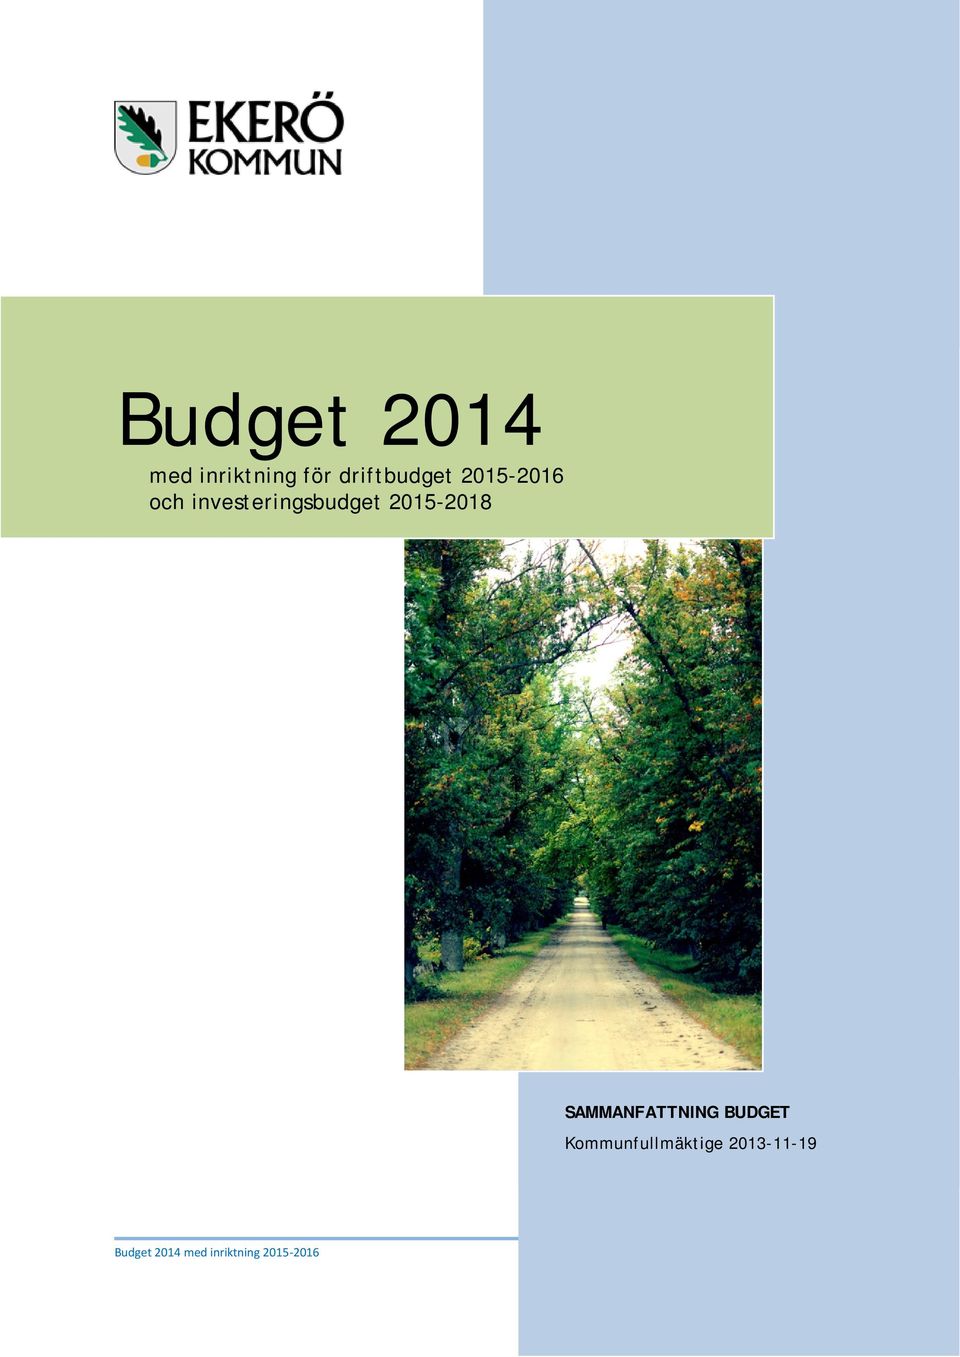 investeringsbudget 2015-2018